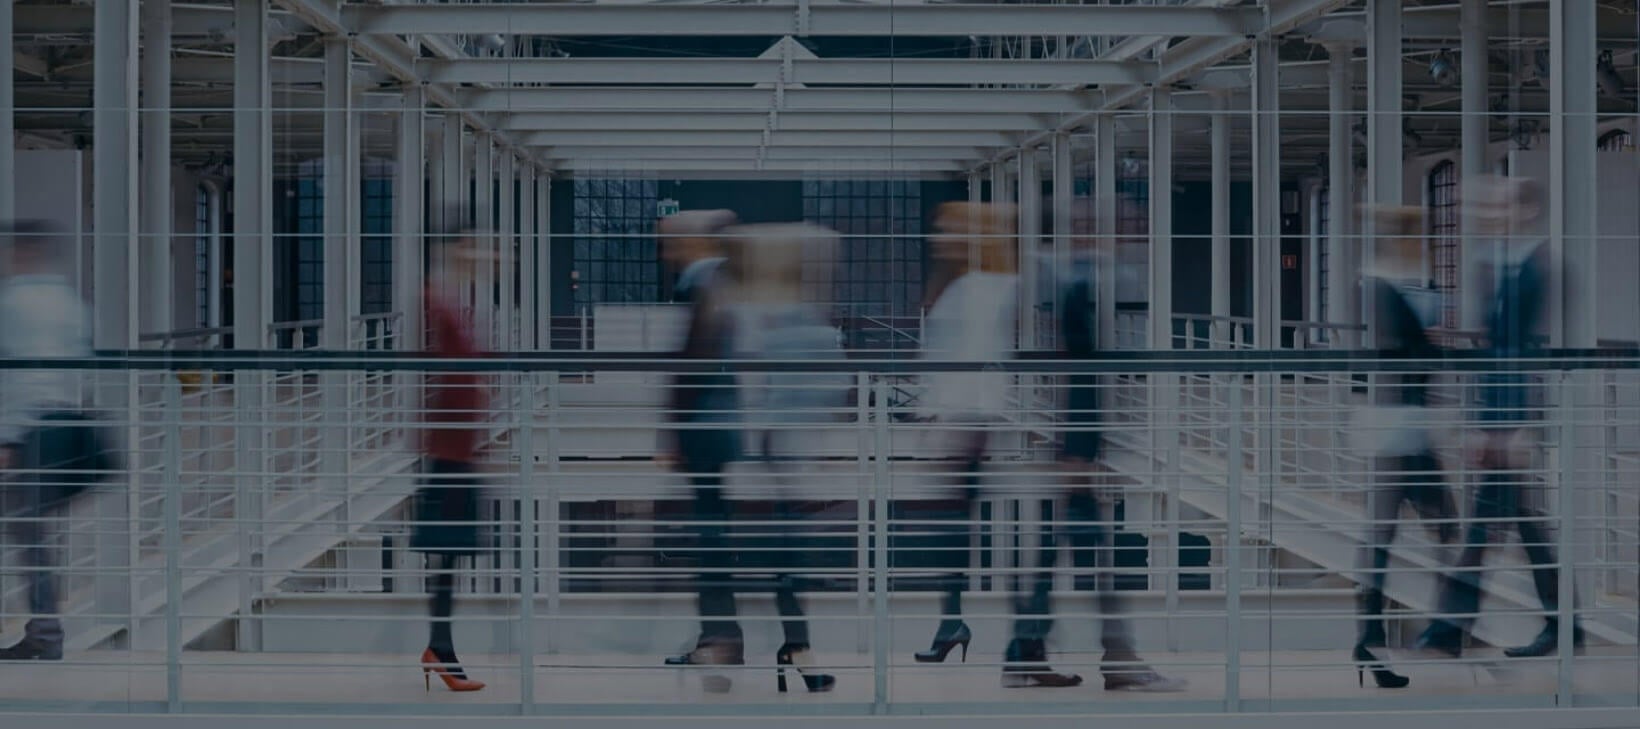 Slika prikazuje nejasne obrise ljudi koji prolaze hodnikom providnog objekta koji se sastoji iz čeličnih i staklenih delova.